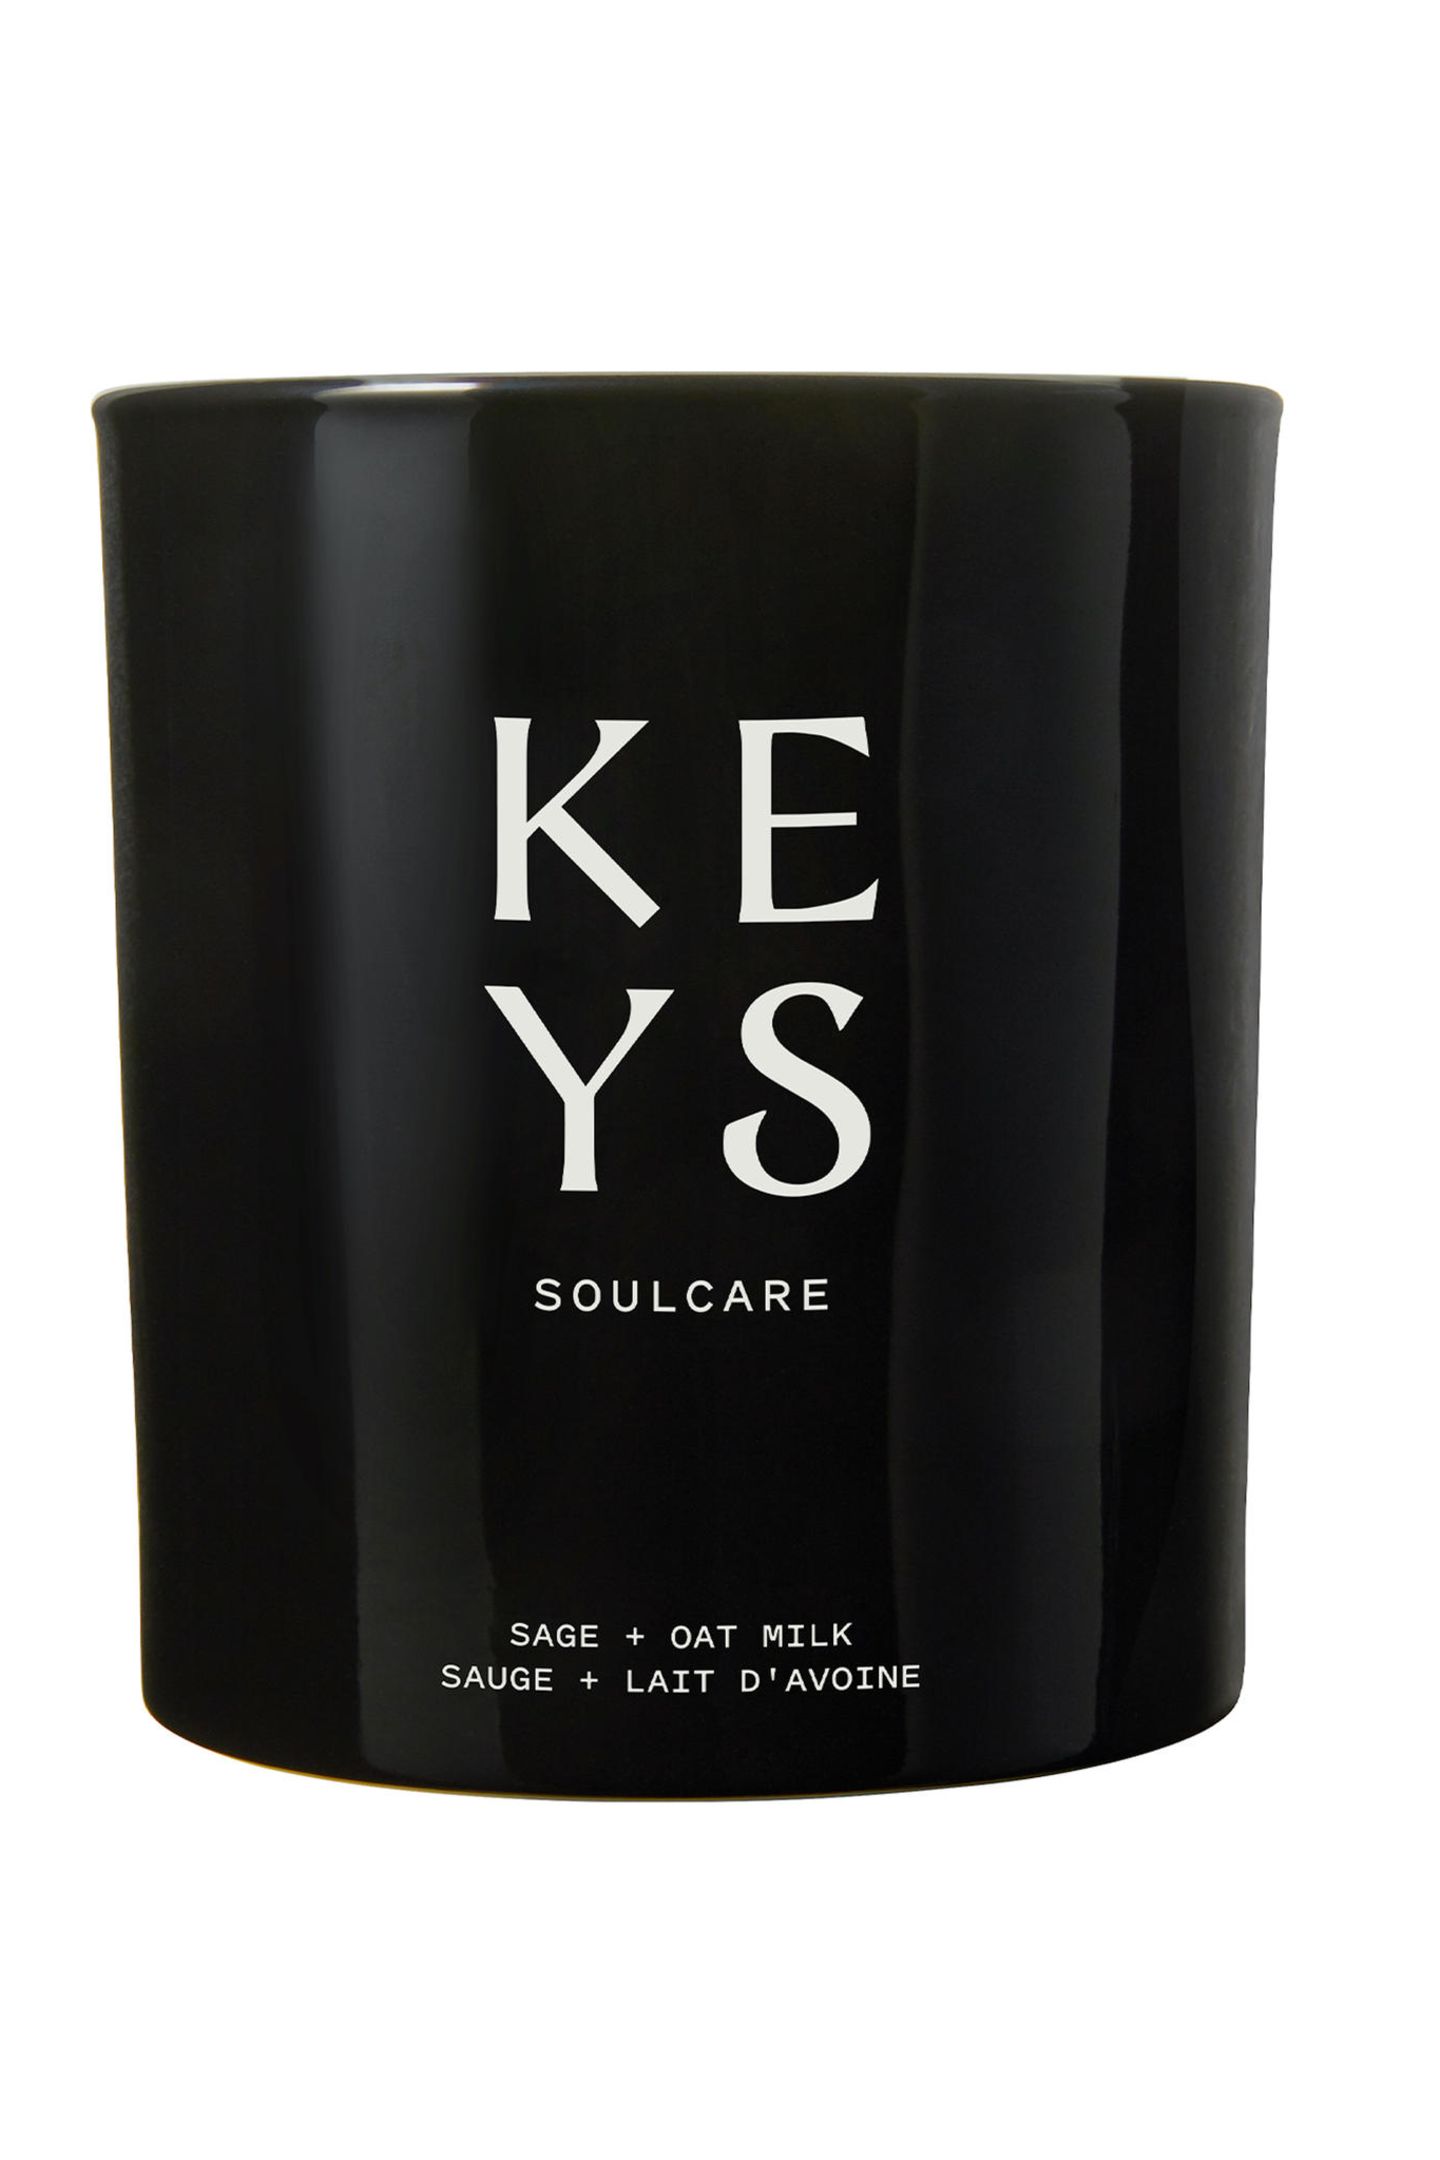 Selfcare? Ne, wir brauchen Soulcare! Keys? Dieser Name kommt einem doch bekannt vor? Genau, bei "Keys Soulcare" handelt es sich nämlich um die neue Beauty- und Lifestylemarke von Sängerin Alicia Keys. Neben Skincare und Facerollern sind auch Duftkerzen im Sortiment zu finden. "Sage + Oat Milk"-Duftkerze von Keys Soulcare, ca. 38 Euro.